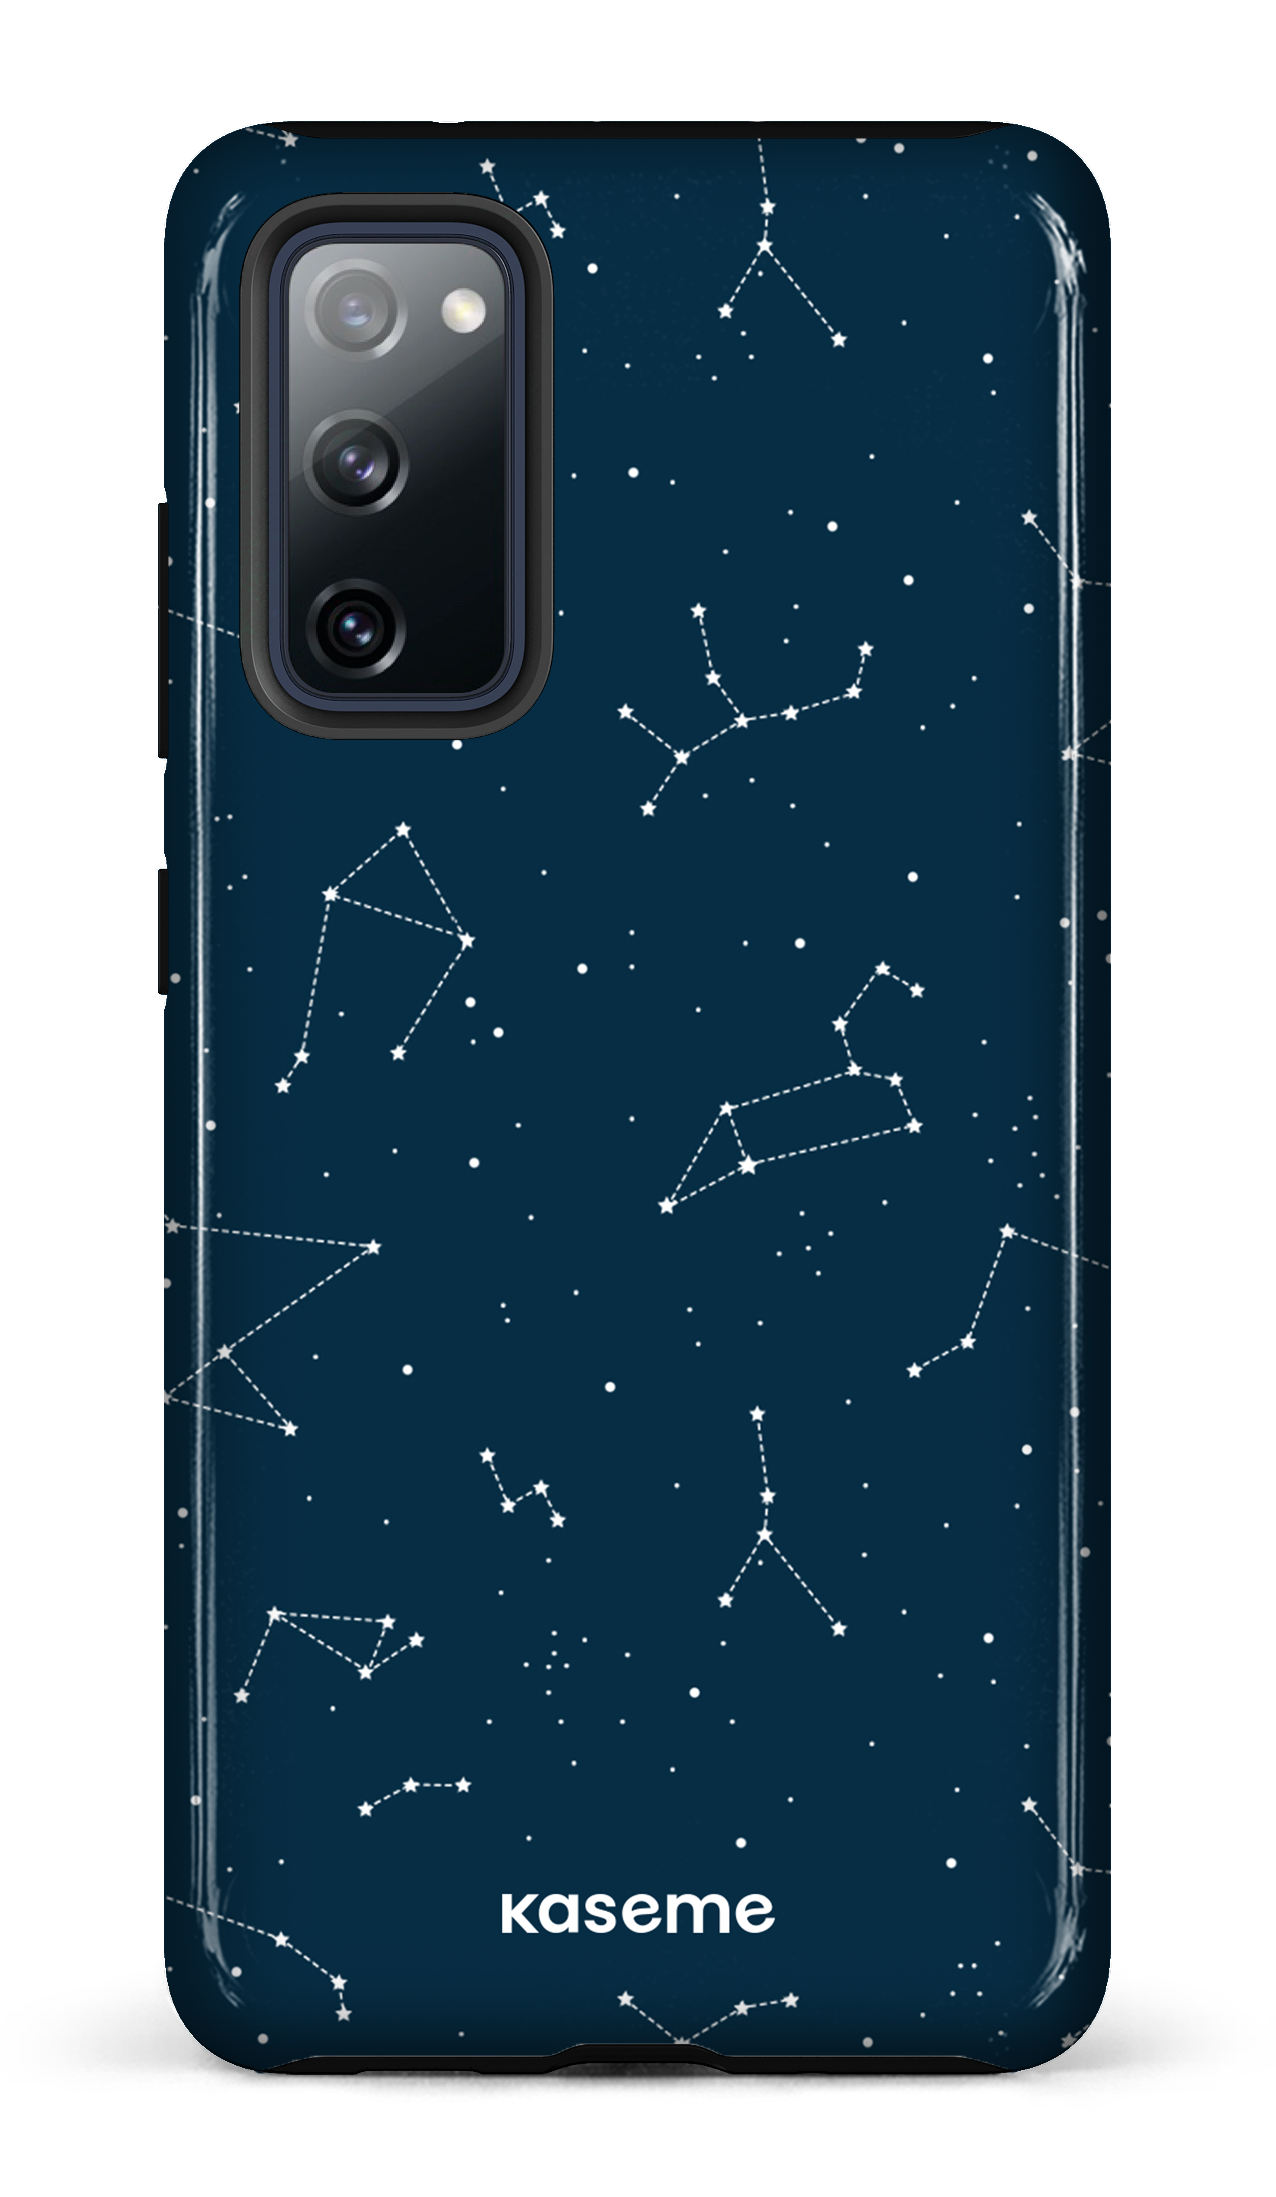 Cosmos - Galaxy S20 FE